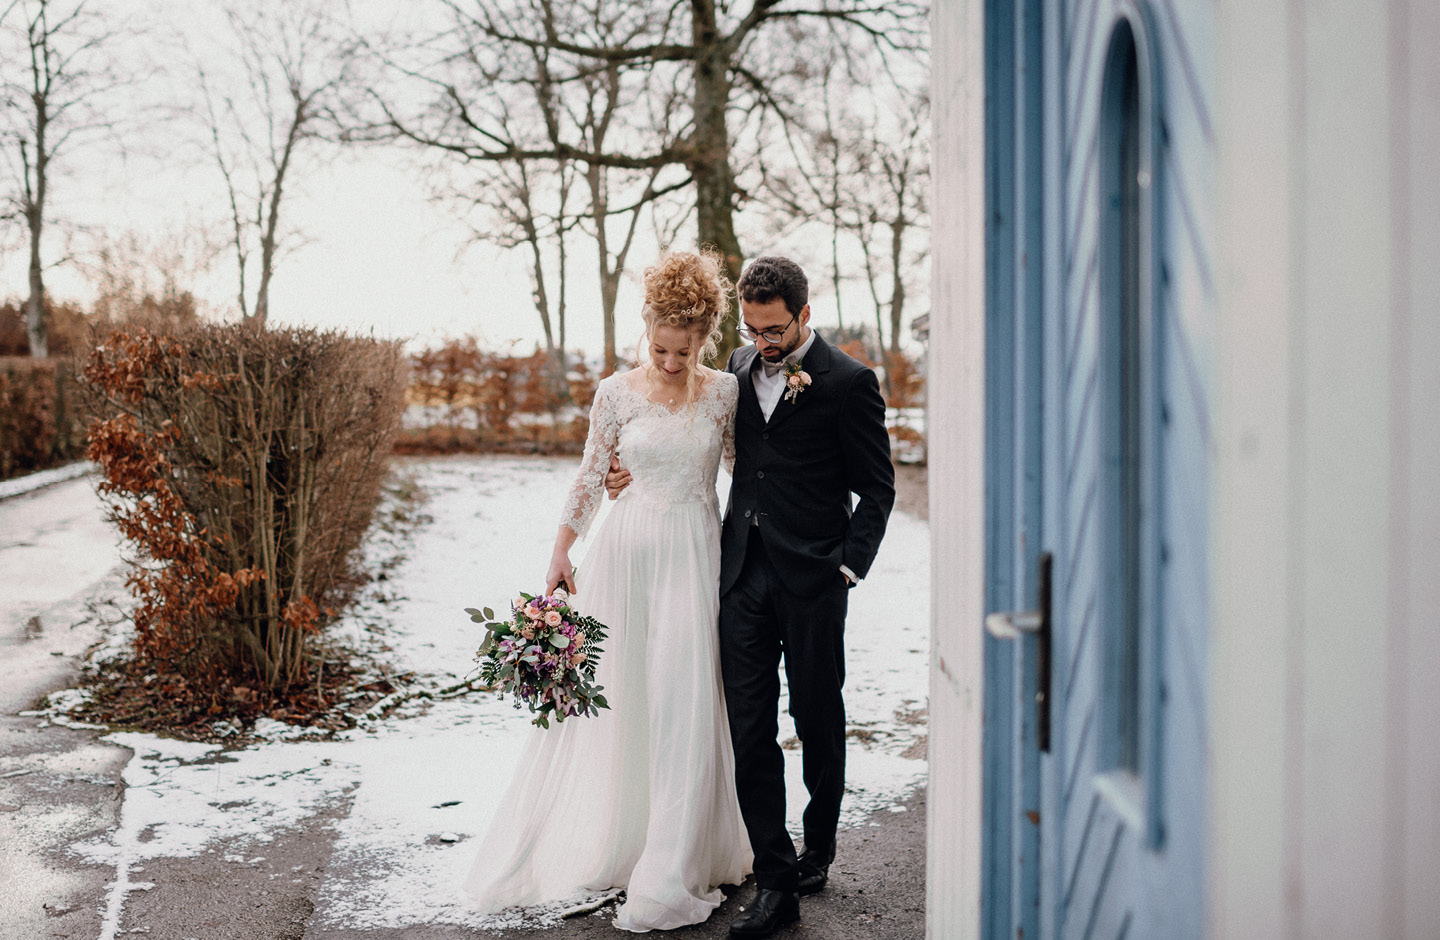 Mariage petit budget : se marier en hiver